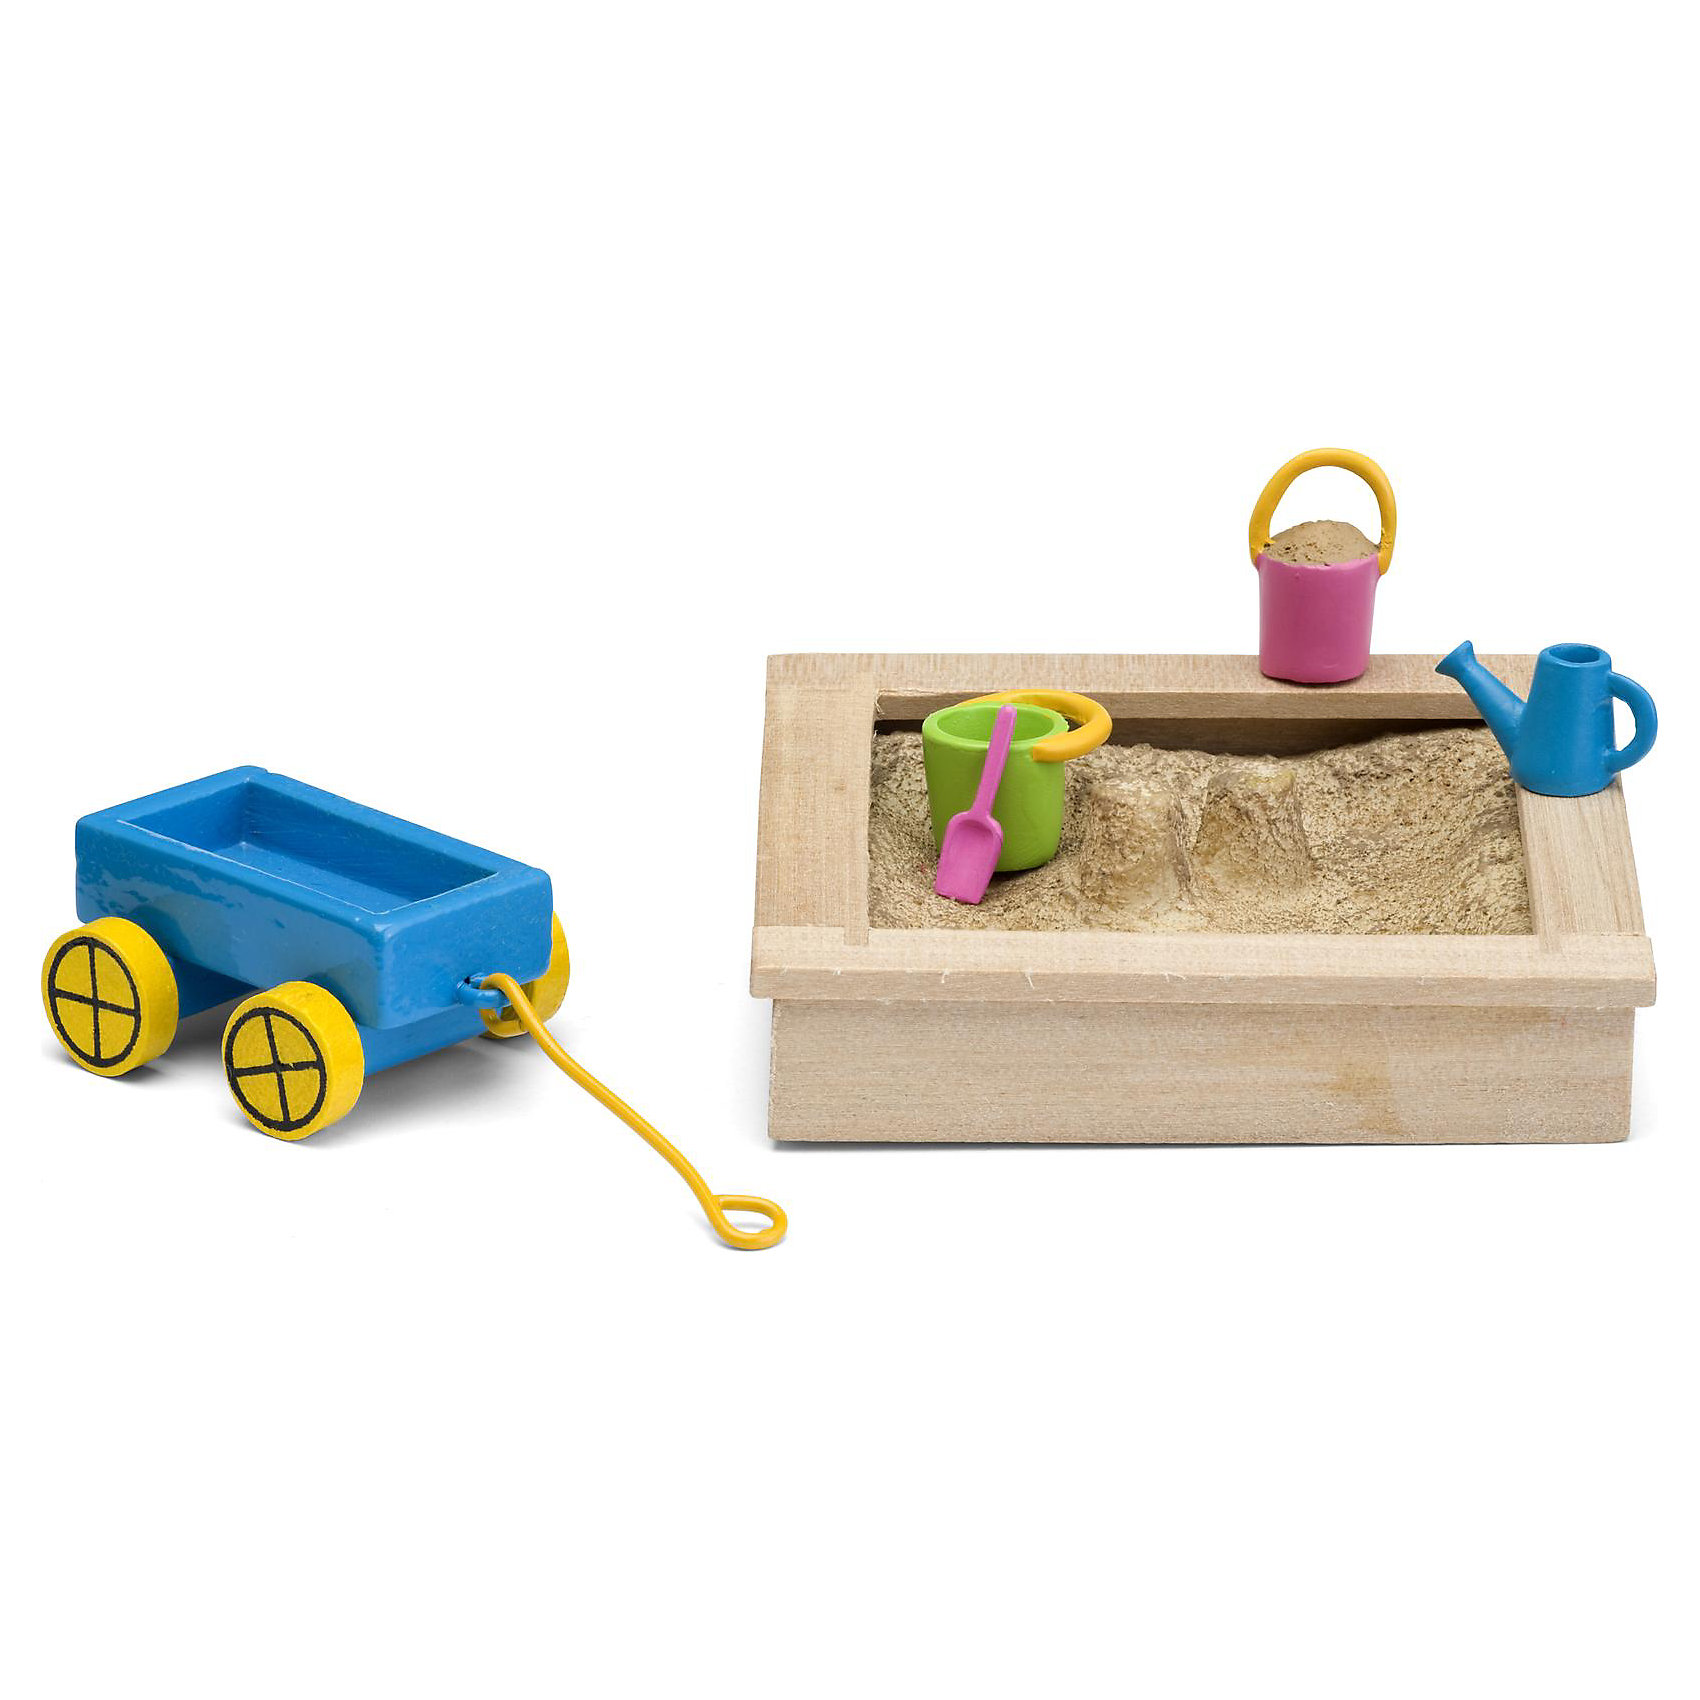 Набор для домика Смоланд "Песочница с игрушками" Lundby 13406667